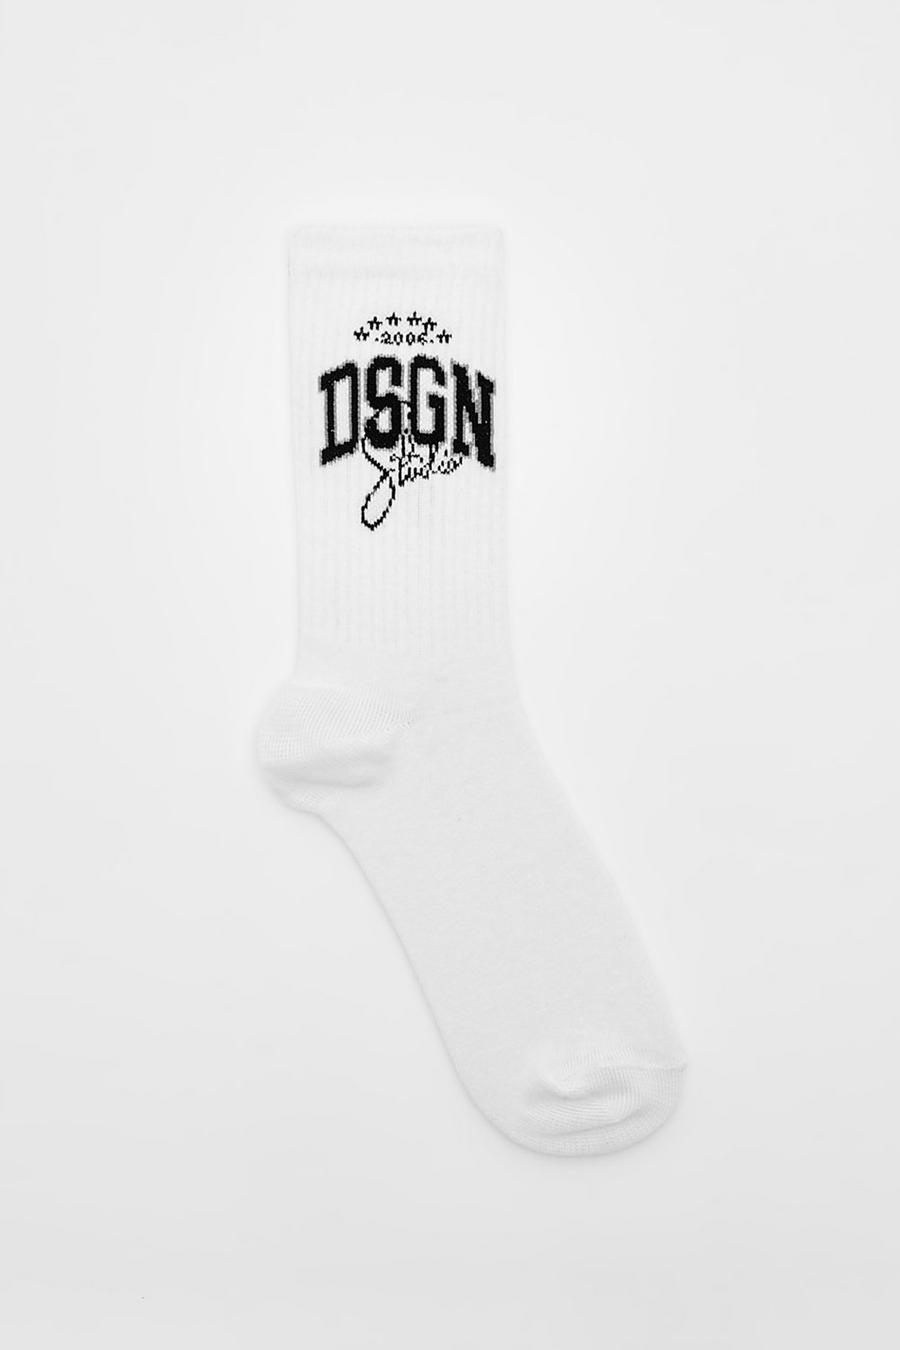 Dsgn Studio Sports Socken, White